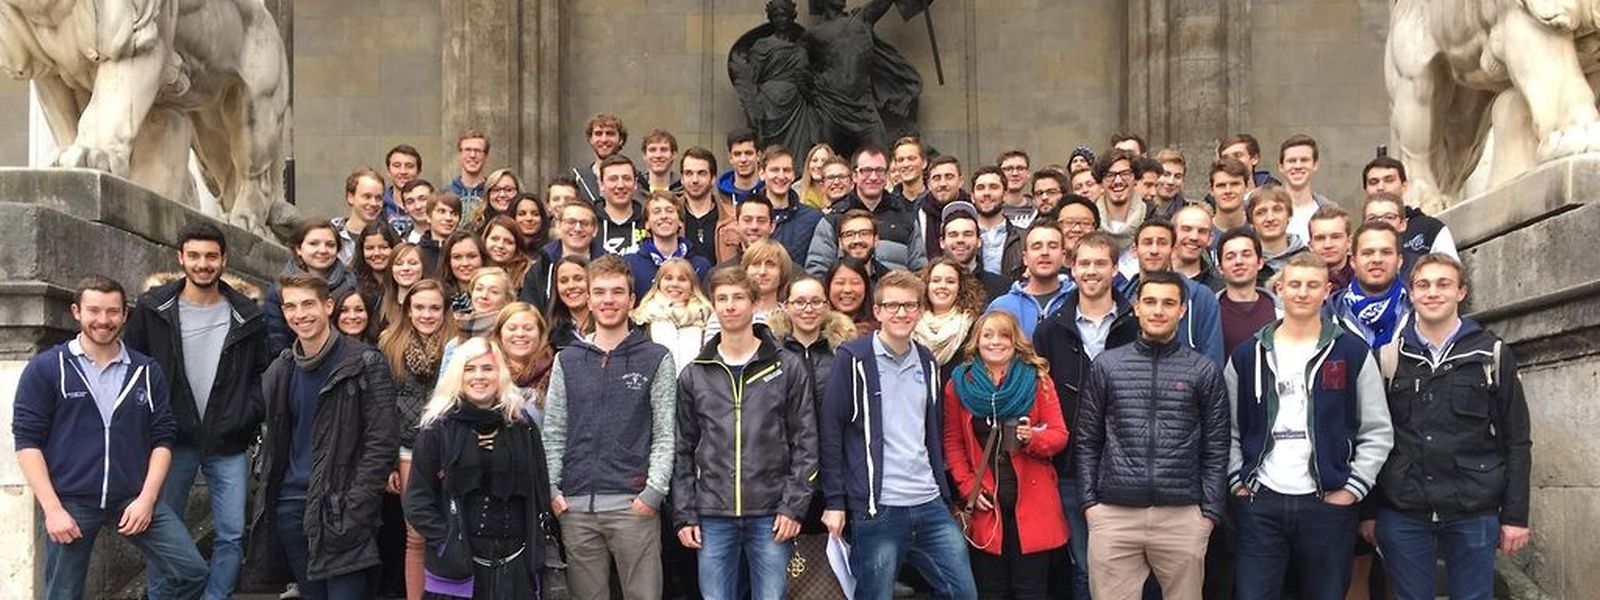 "Wer sich anfangs in München verloren fühlt, dem bietet der Verein der Luxemburger Studenten in München (LSM) einen Anhaltspunkt."